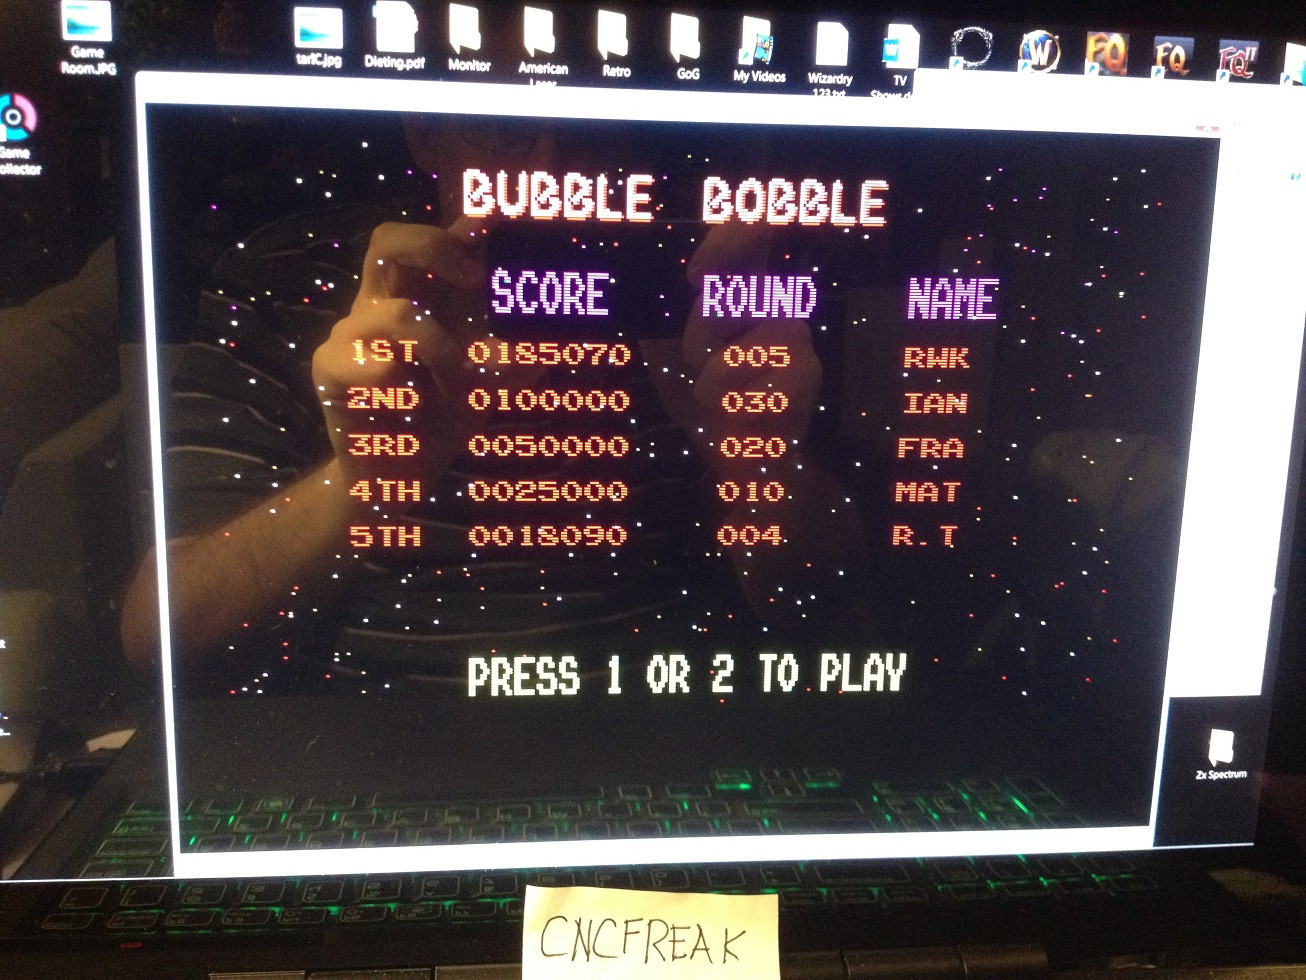 cncfreak: Bubble Bobble (Amiga Emulated) 185,070 points on 2013-10-16 23:21:29